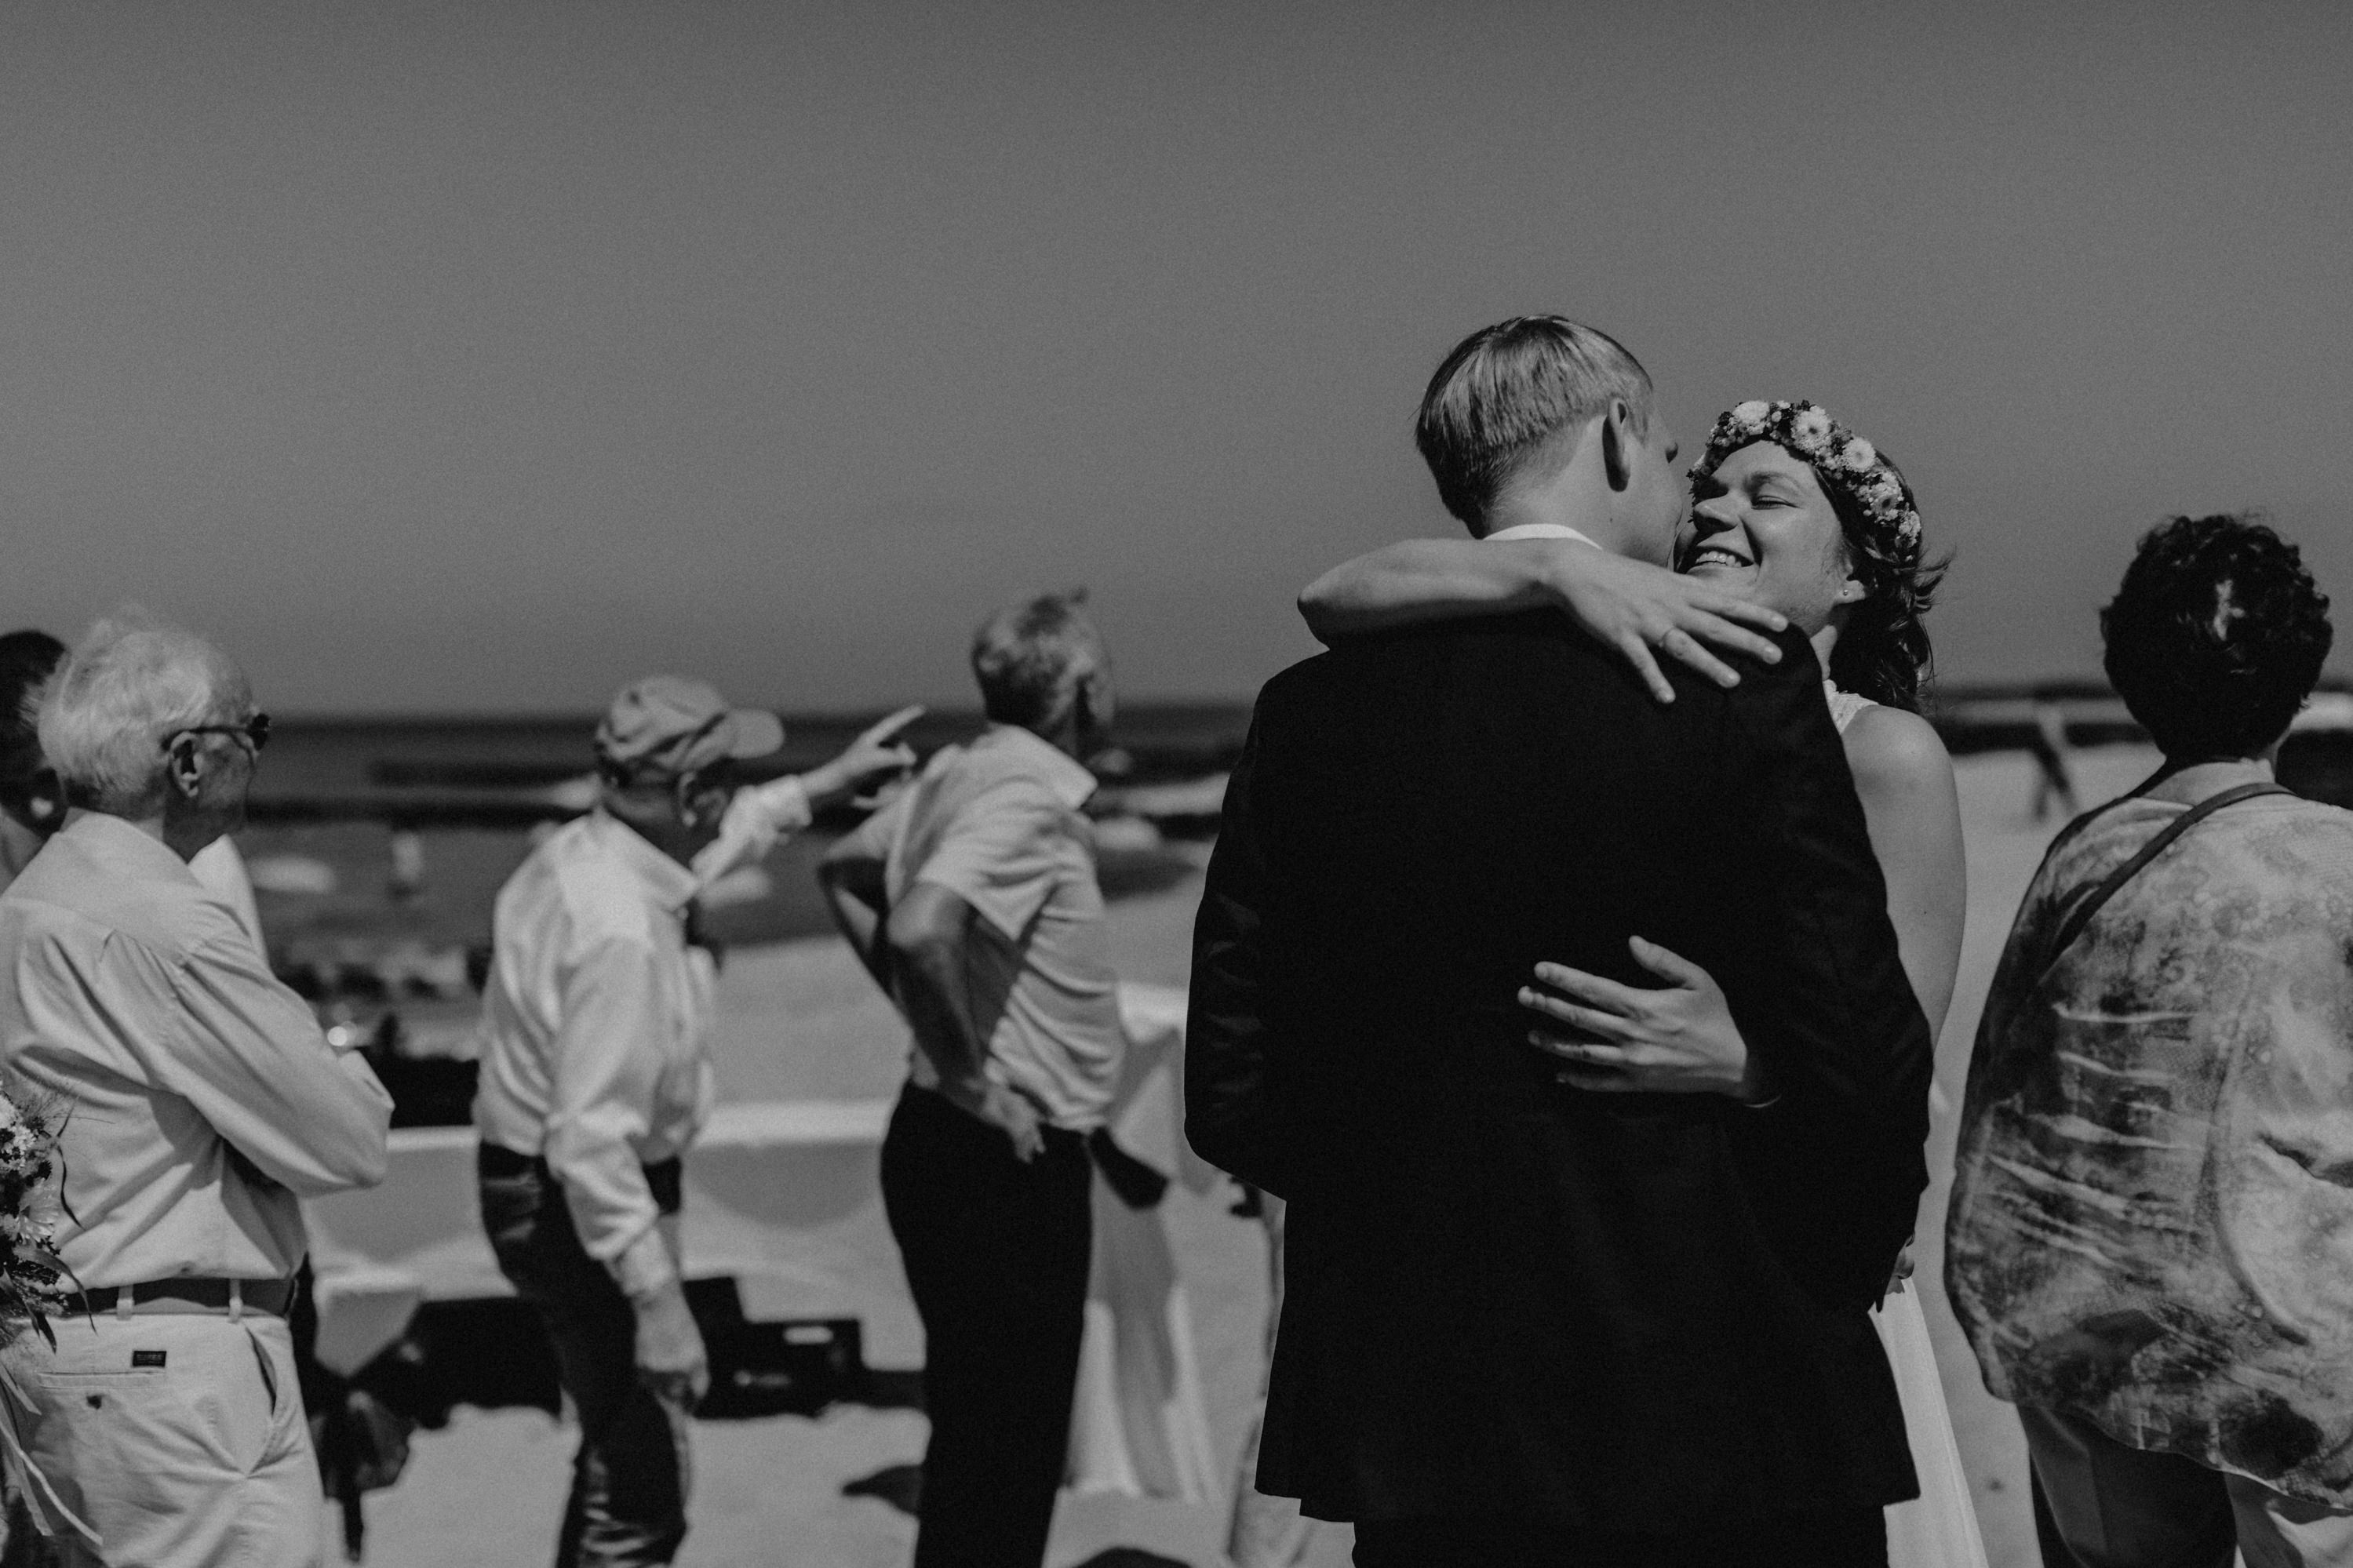 Strandhochzeit an der Ostsee. Es handelt sich um ein Foto aus einer Hochzeitsreportage, das von den beiden Hochzeitsfotografen Tom und Lia Fotografie aus Potsdam aufgenommen wurde. Die Hochzeit fand in Ahrenshoop direkt am Strand statt.